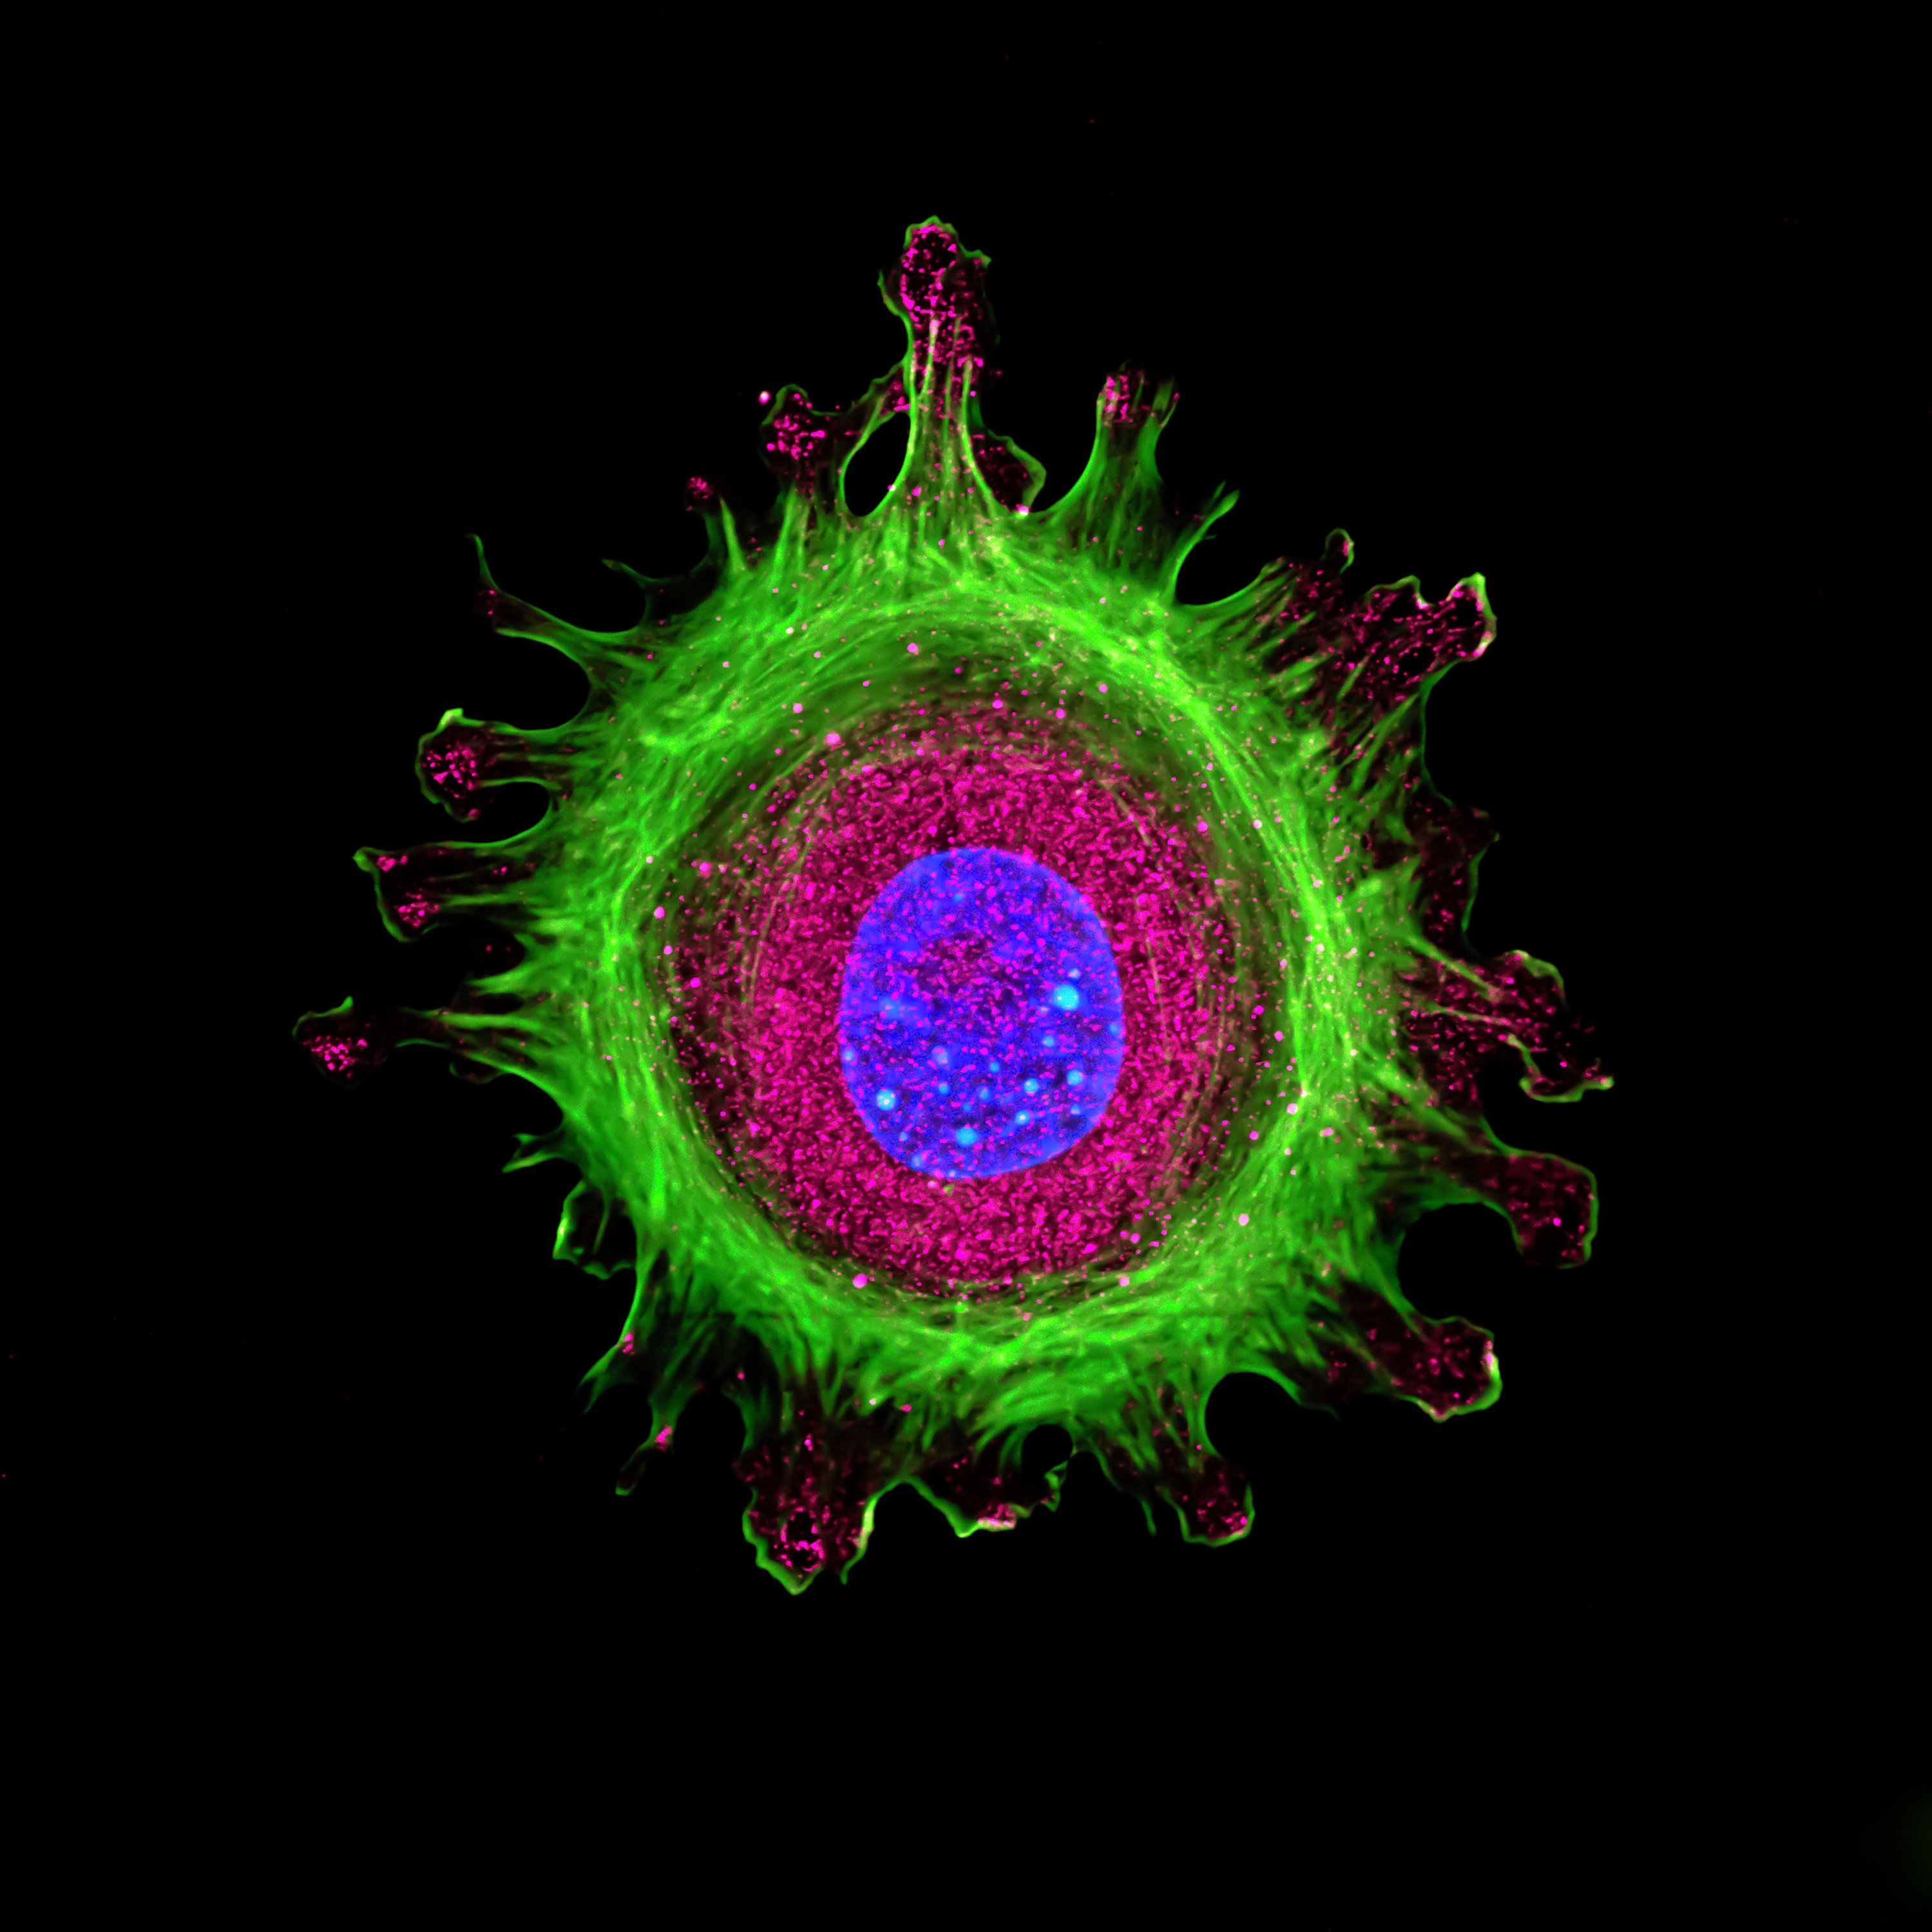 Immunfluoreszenz einer einzelnen menschlichen Zelle, die in einer Gewebekultur gezüchtet, mit mehreren Antikörpern angefärbt und mittels konfokaler Mikroskopie sichtbar gemacht wurde